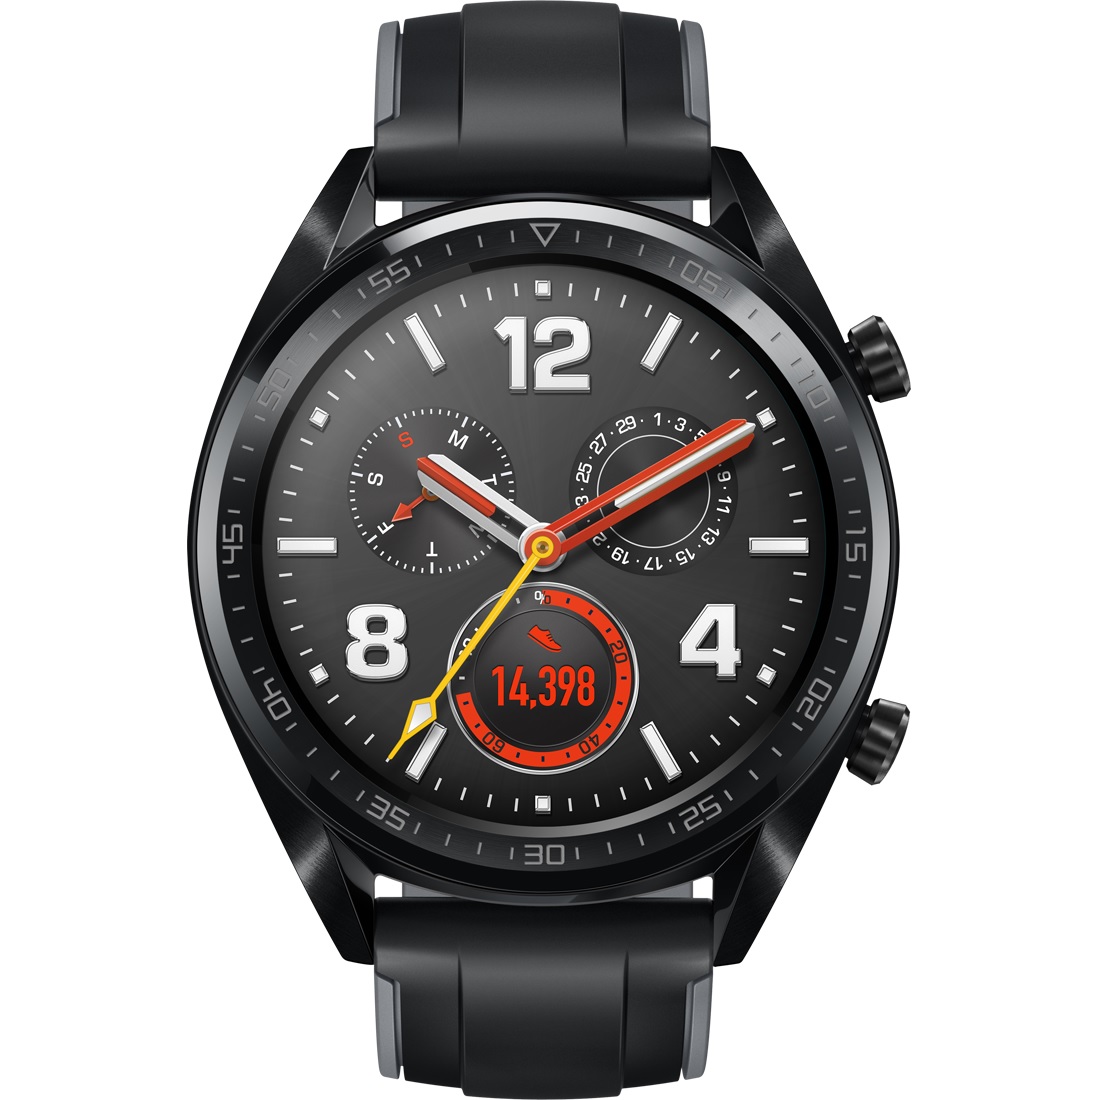 Huawei Watch GT smartwatch